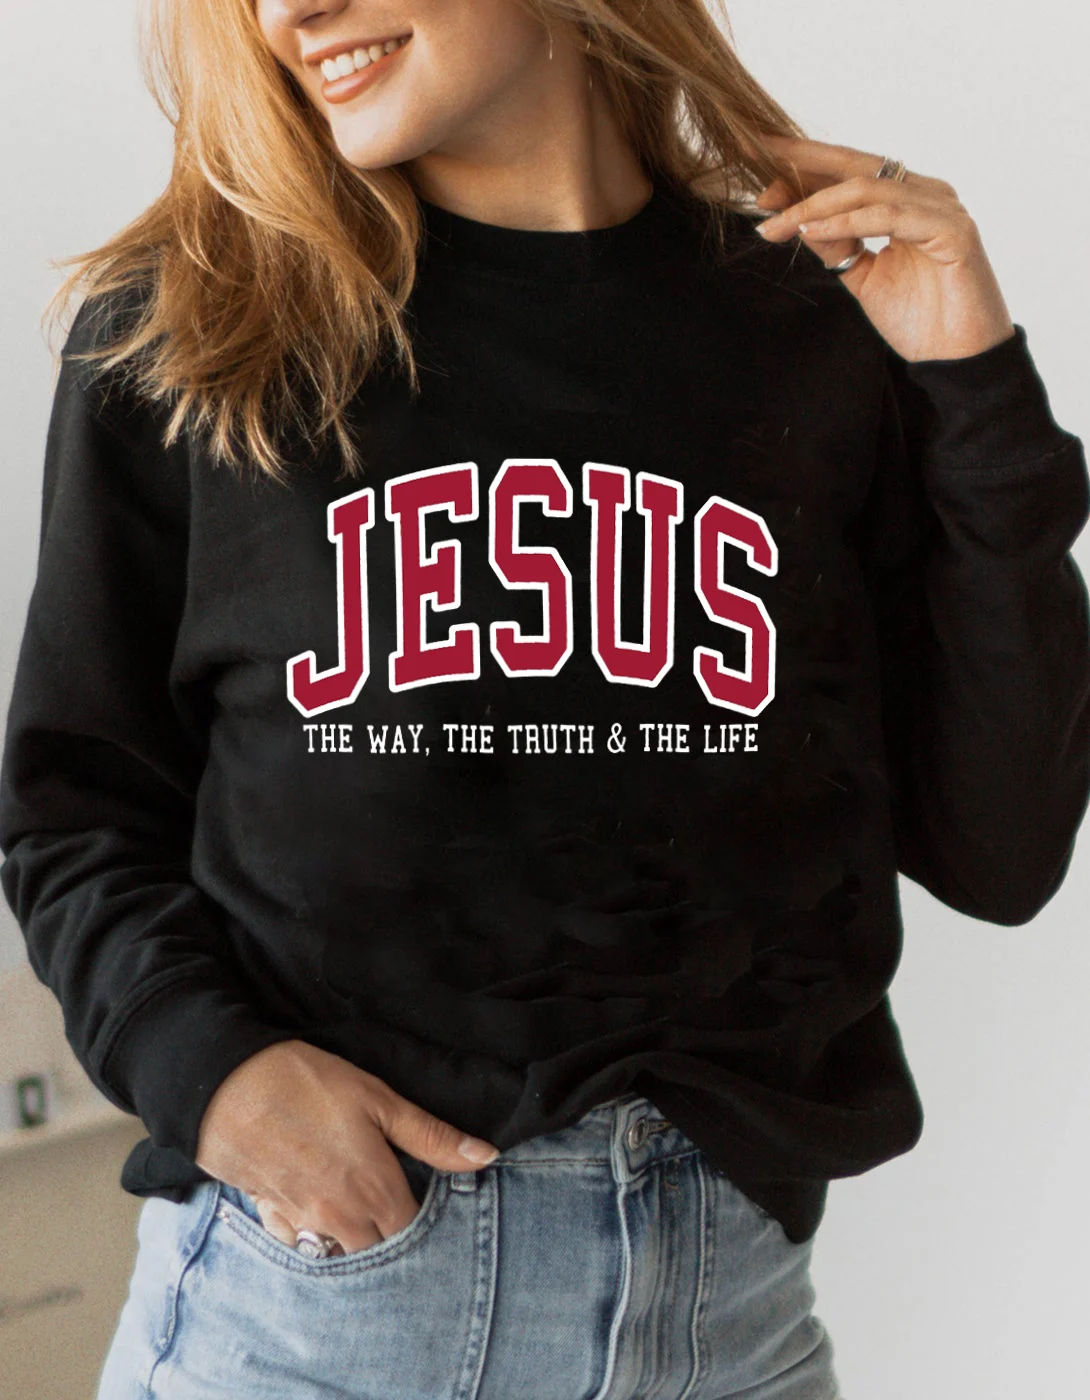 

Женский свитшот с изображением Иисуса дороги истины жизни, Вдохновляющие пуловеры, Женские повседневные топы с изображением Библии